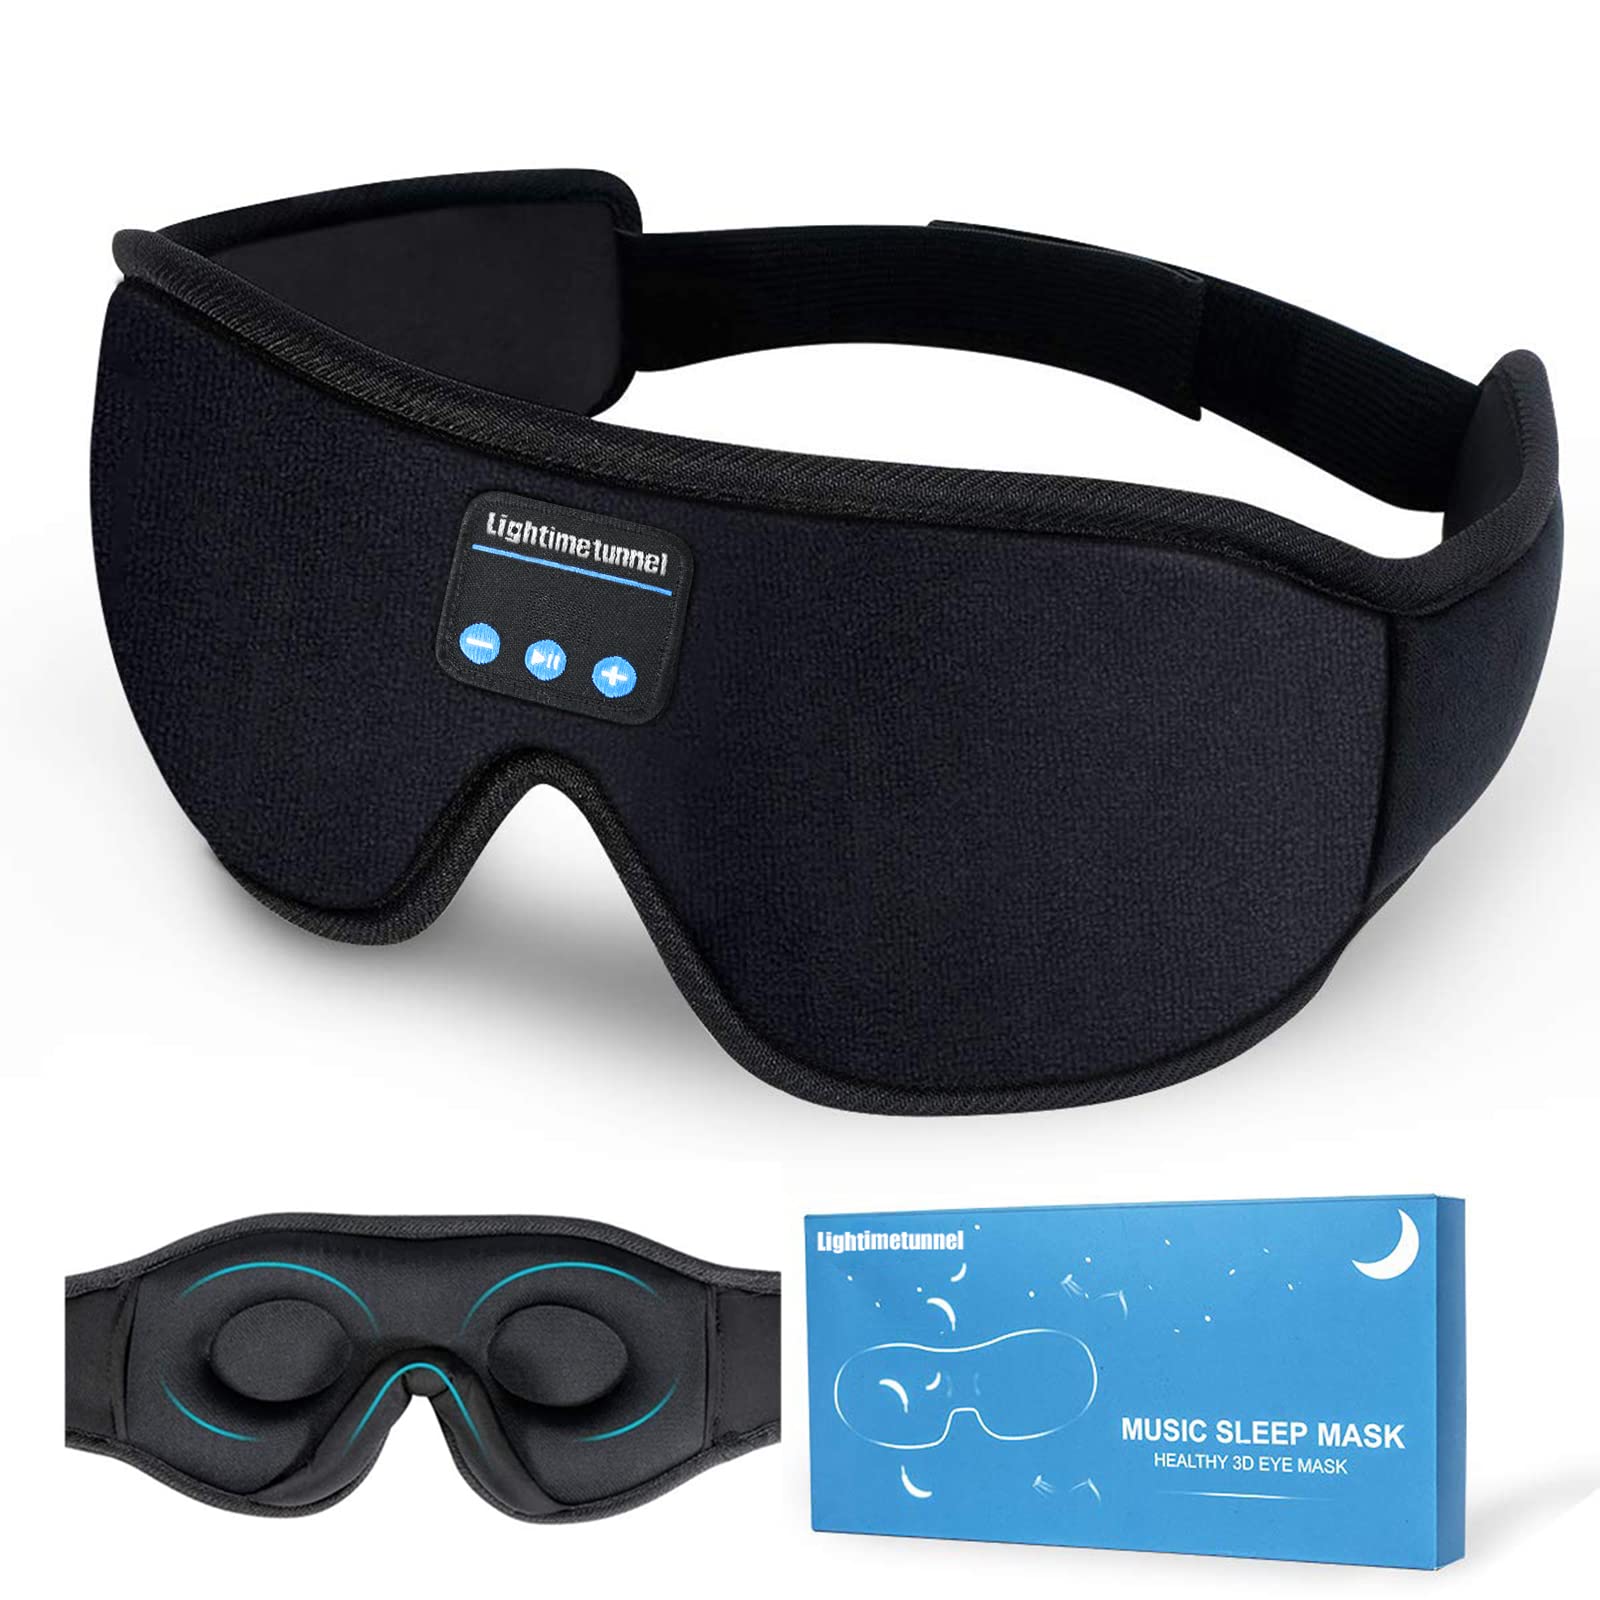 LIGHTIMETUNNEL 睡眠耳机蓝牙 5.0 无线 3D 眼罩，可水洗睡眠耳机，适用于侧睡者，带可调节超薄立体声扬声器麦克风，免提，适合失眠旅行